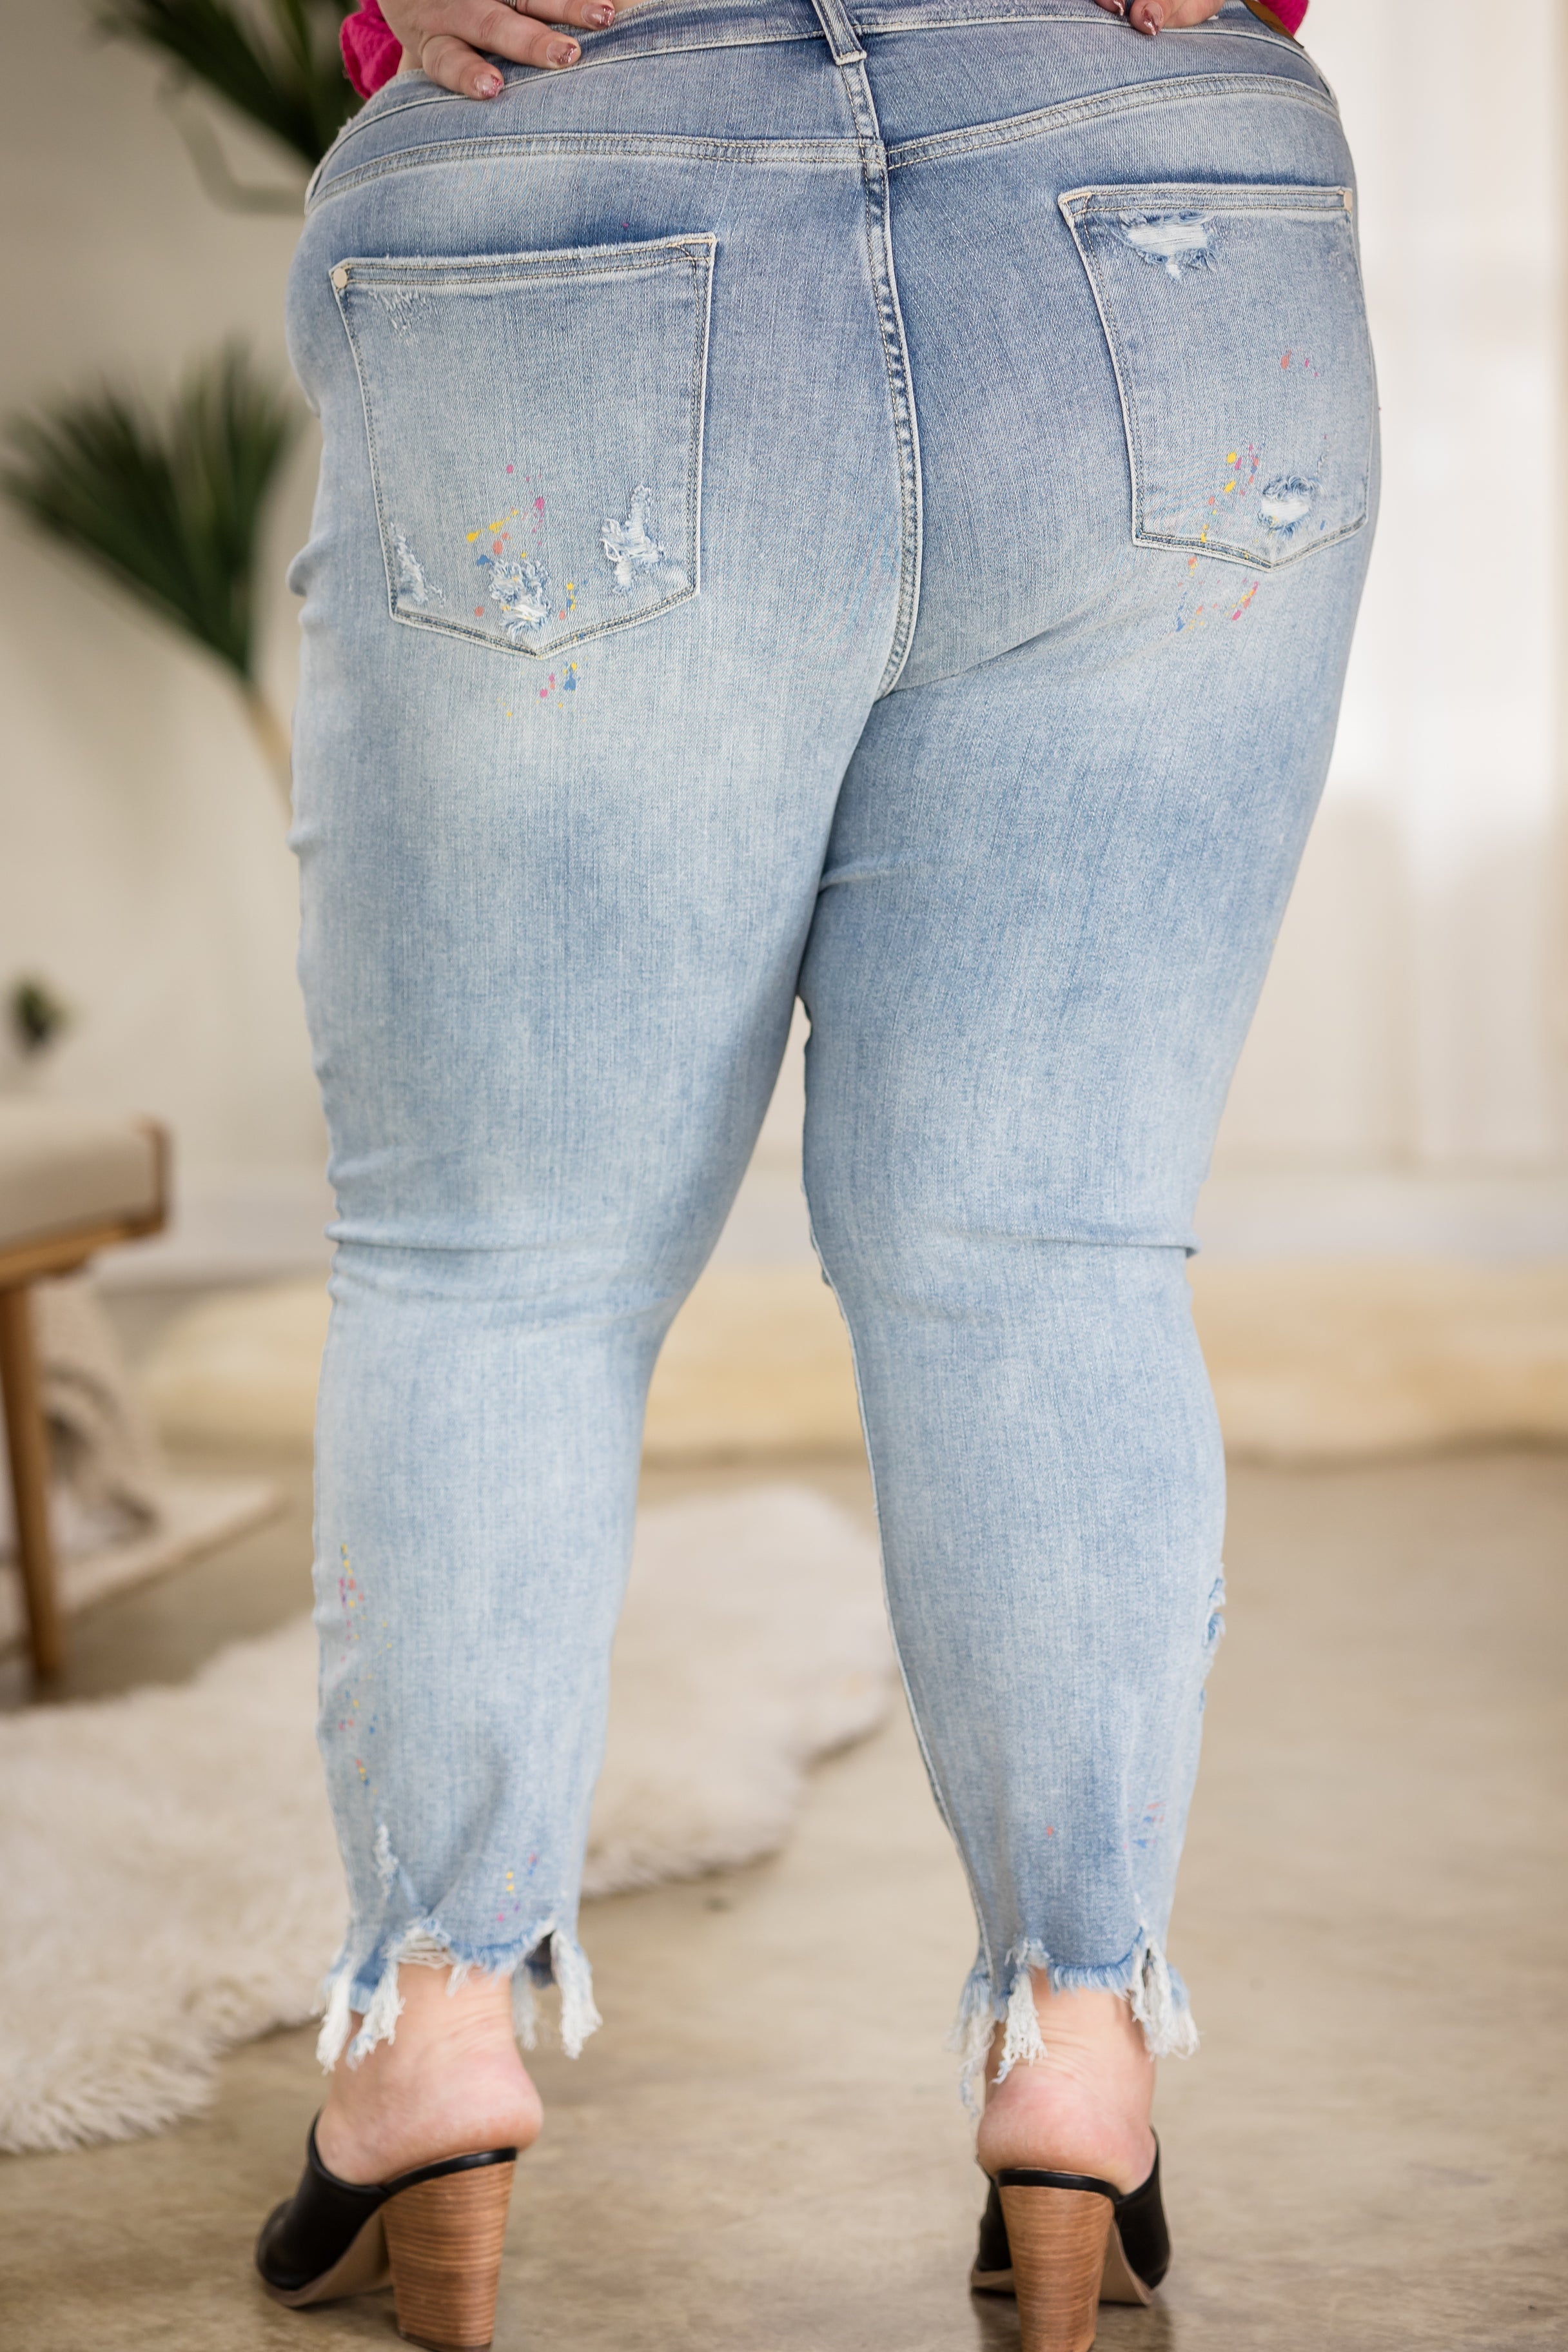 Party Paint Splatter Judy Blue Boyfriend Jeans JB Boutique Simplified